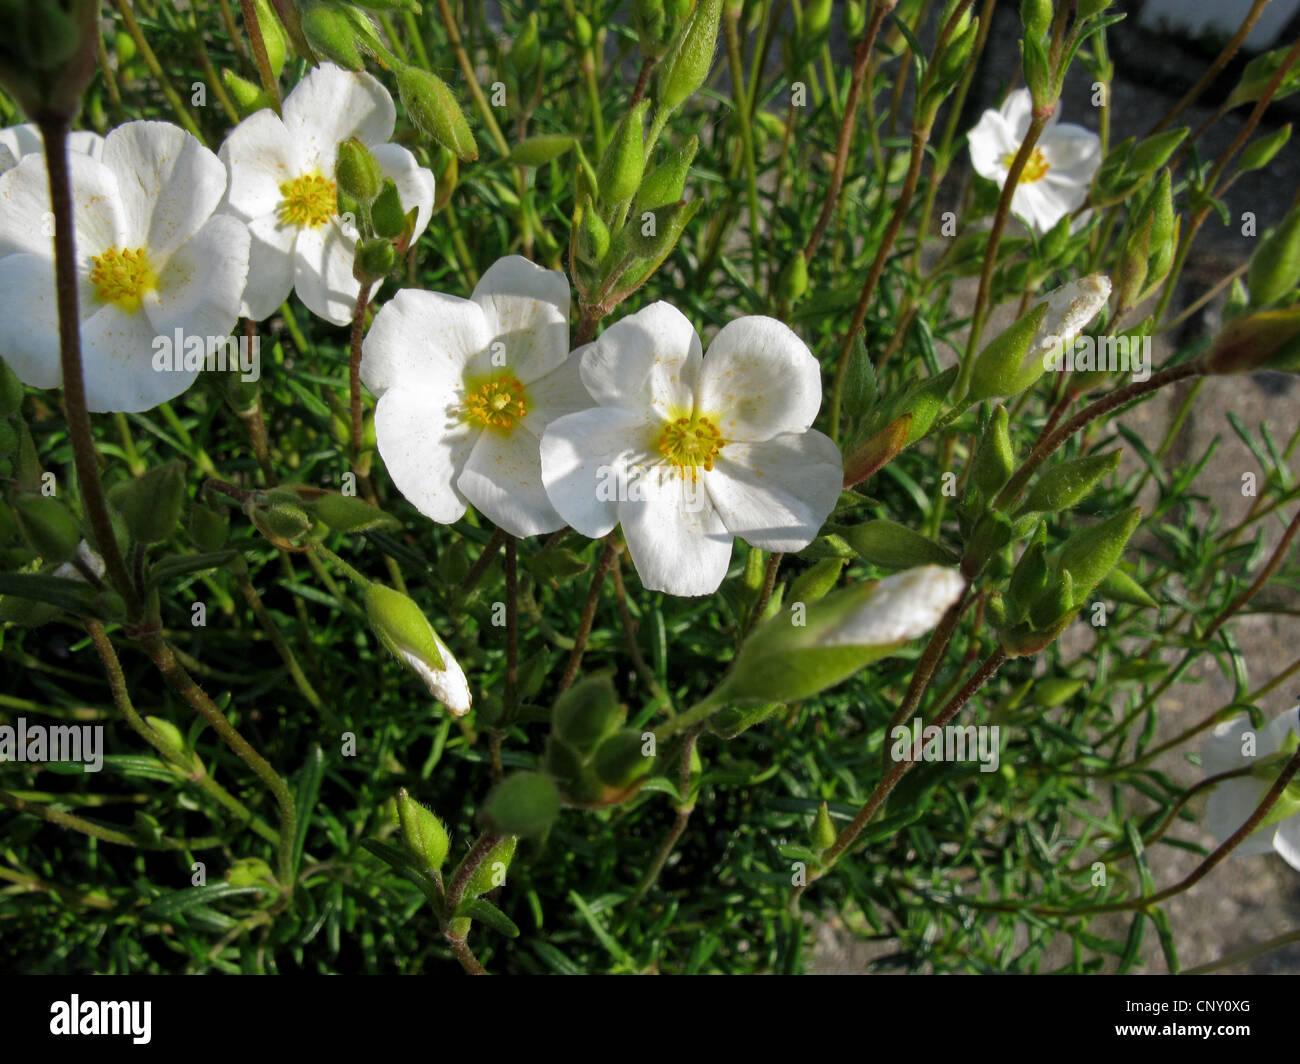 Rock Rose, Halimium (Halimium umbellatum), blooming Stock Photo